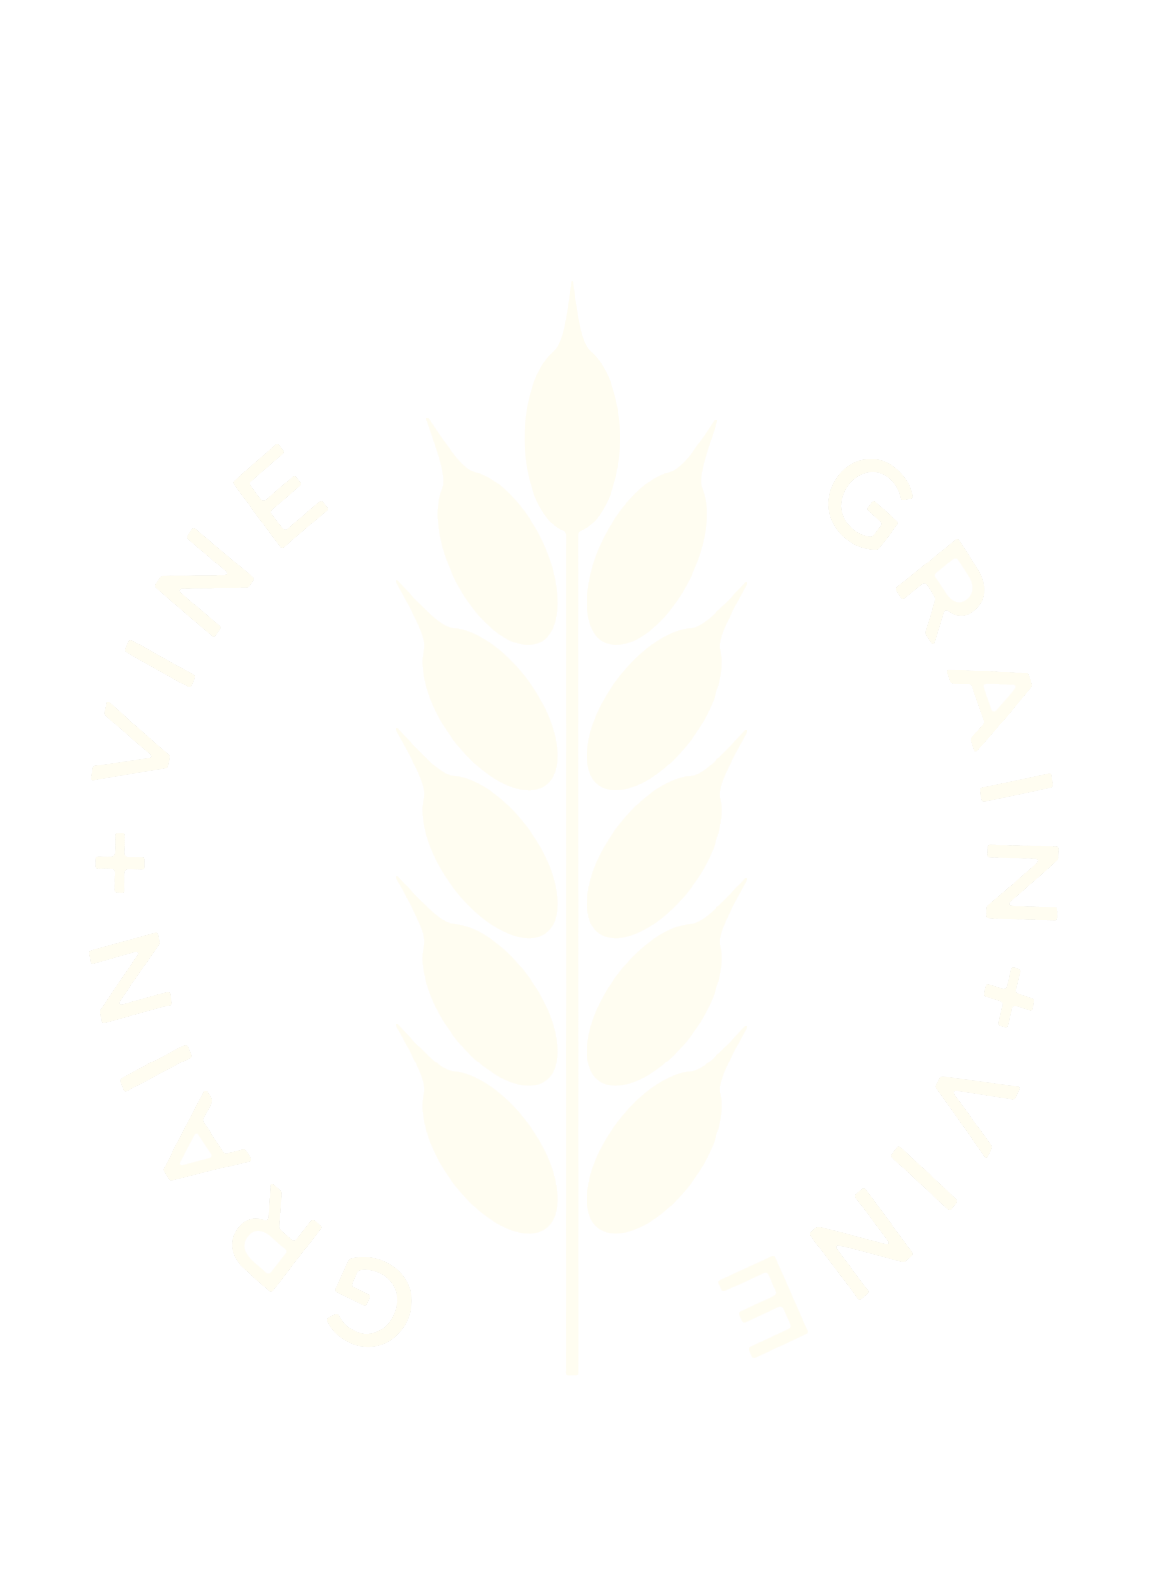 Grain + Vine